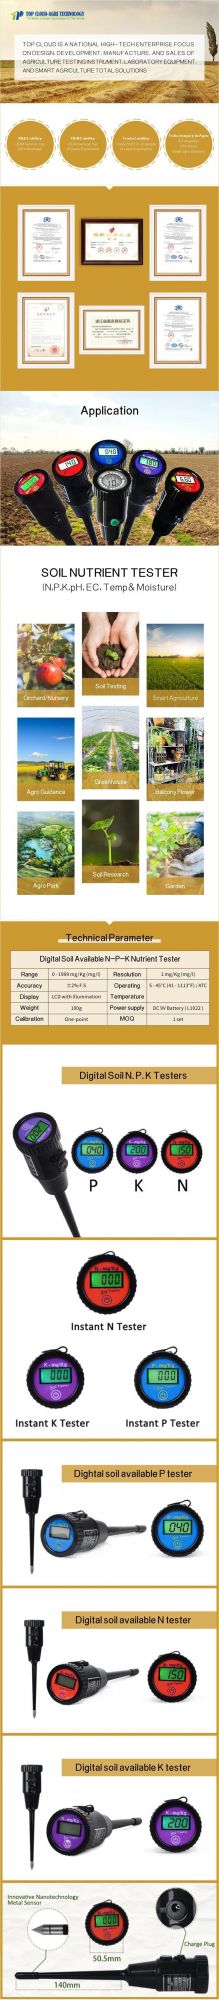 Soil Testing Kit Equipment Fertility Nutrient Analyzer Soil NPK Sensor Tester